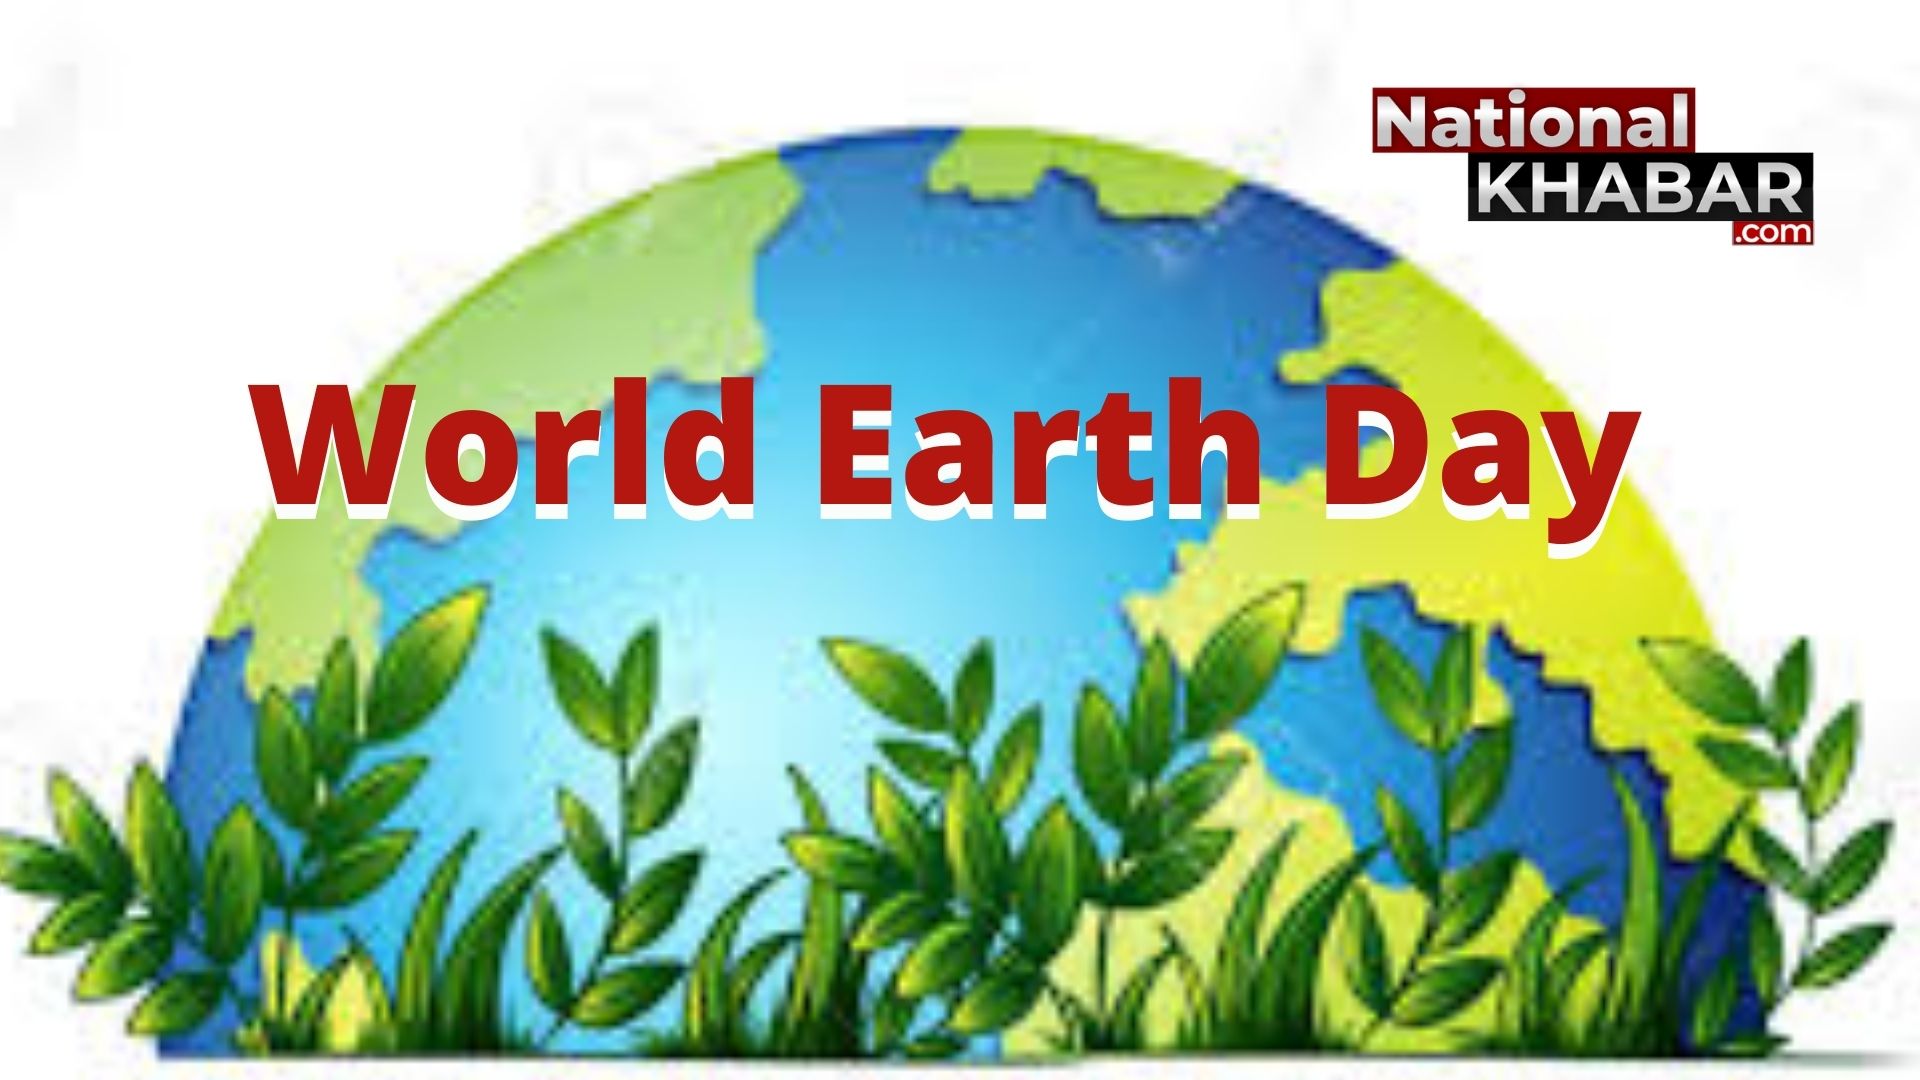 22 अप्रैल को बस हरे-नीले रंग में चमकना ही पृथ्वी दिवस मनाना नहीं है, पहले विषय को समझें और जागरुक बनें